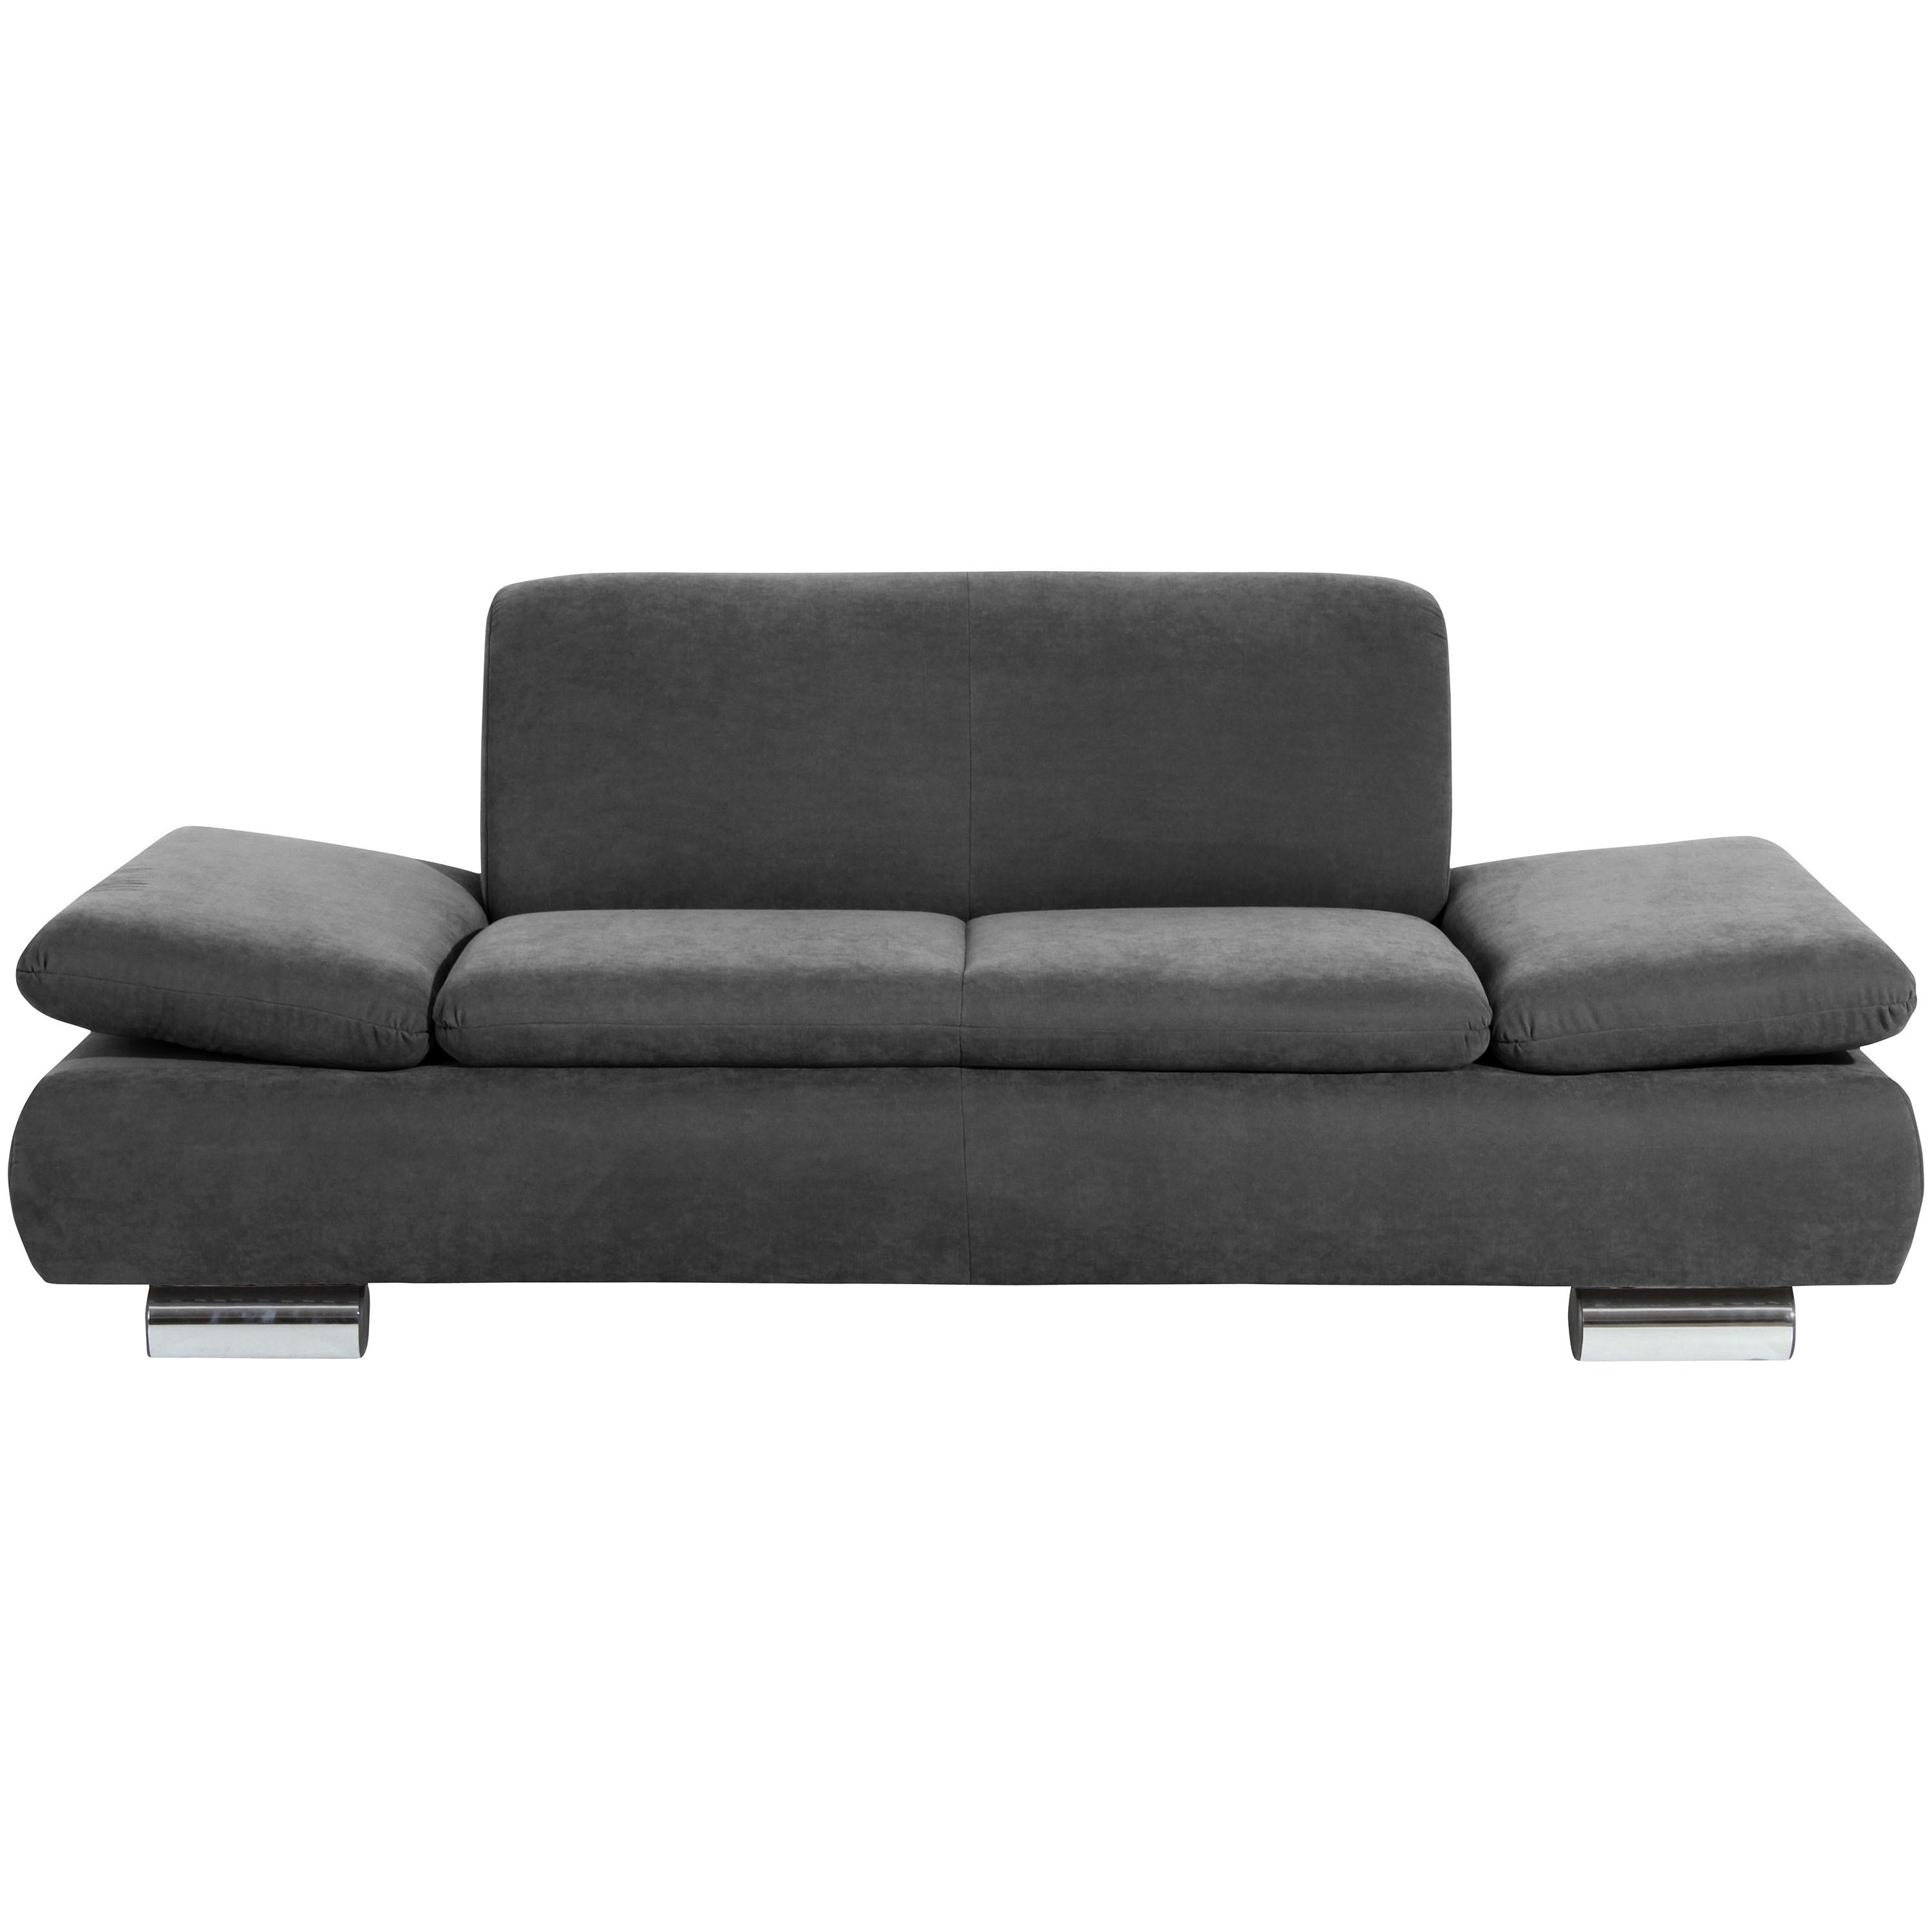 2-Sitzer-Sofa Terrence Armteil verstellbar, Anthrazit Velours - Anthrazit, Design, Textil (190/76/90cm) - Max Winzer